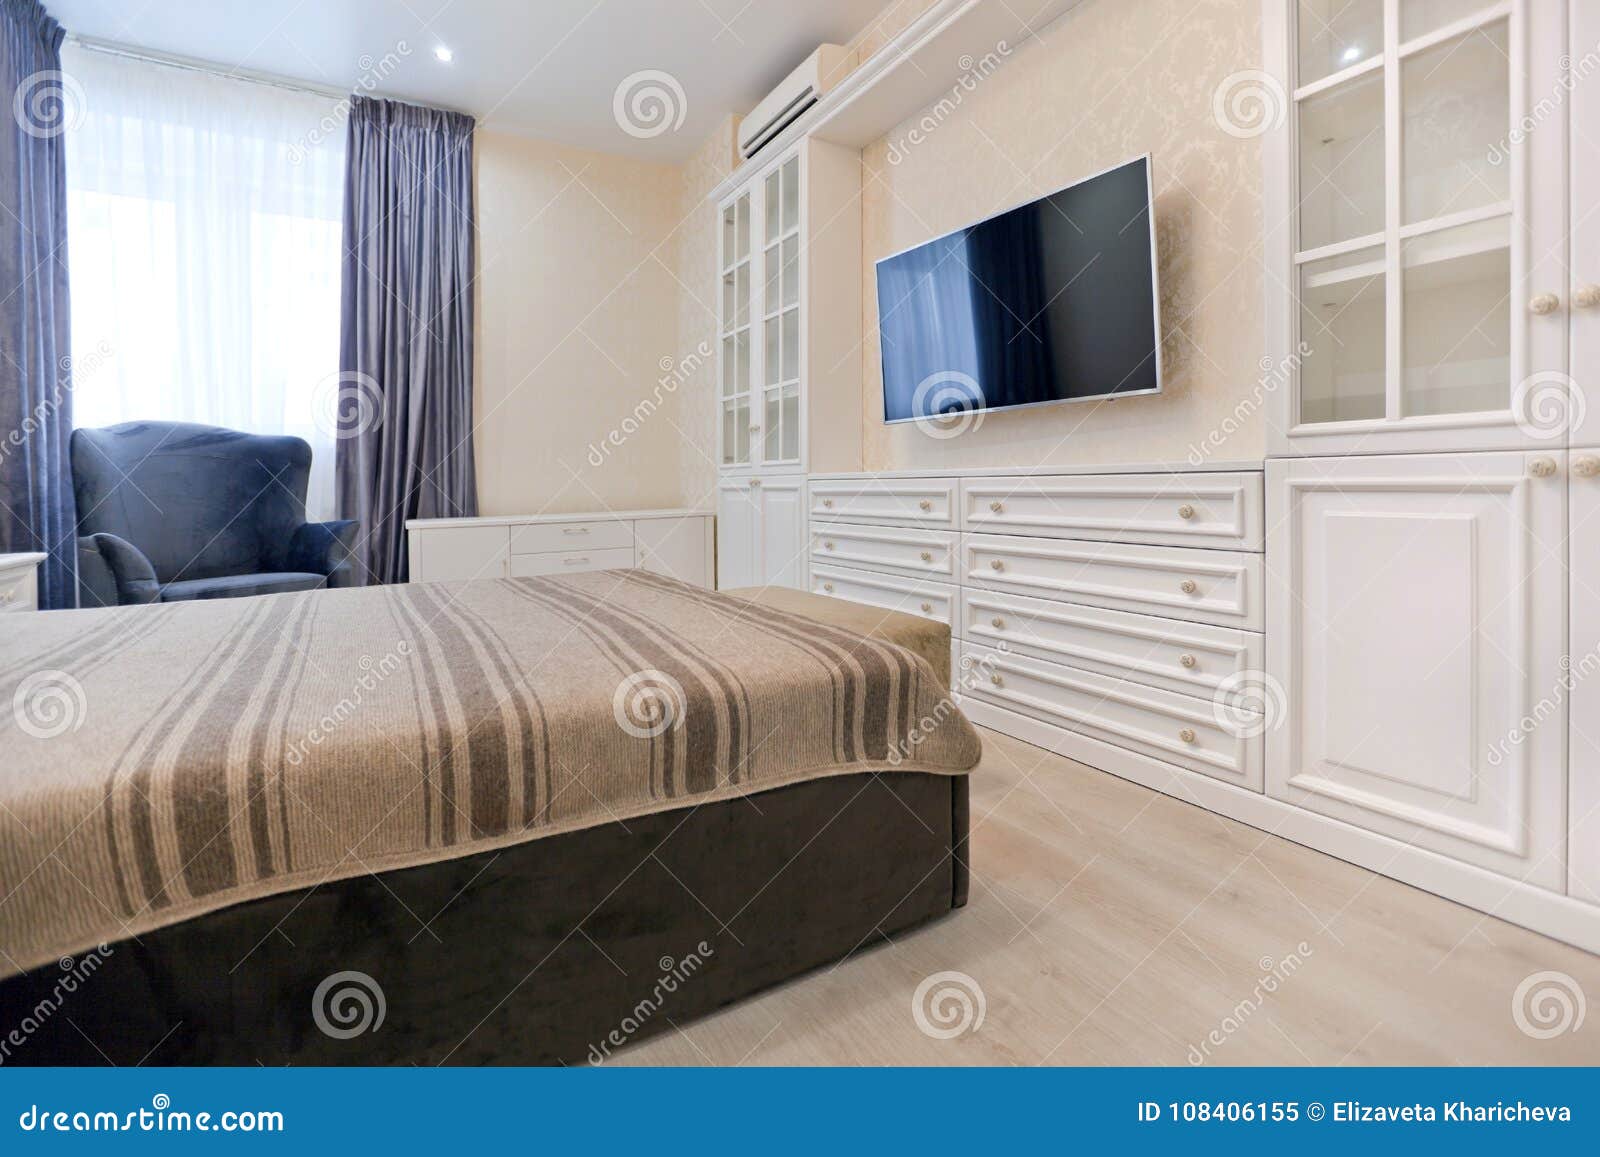 Dormitorio En Colores Claros Con La Cama Oscura Y Las Cortinas